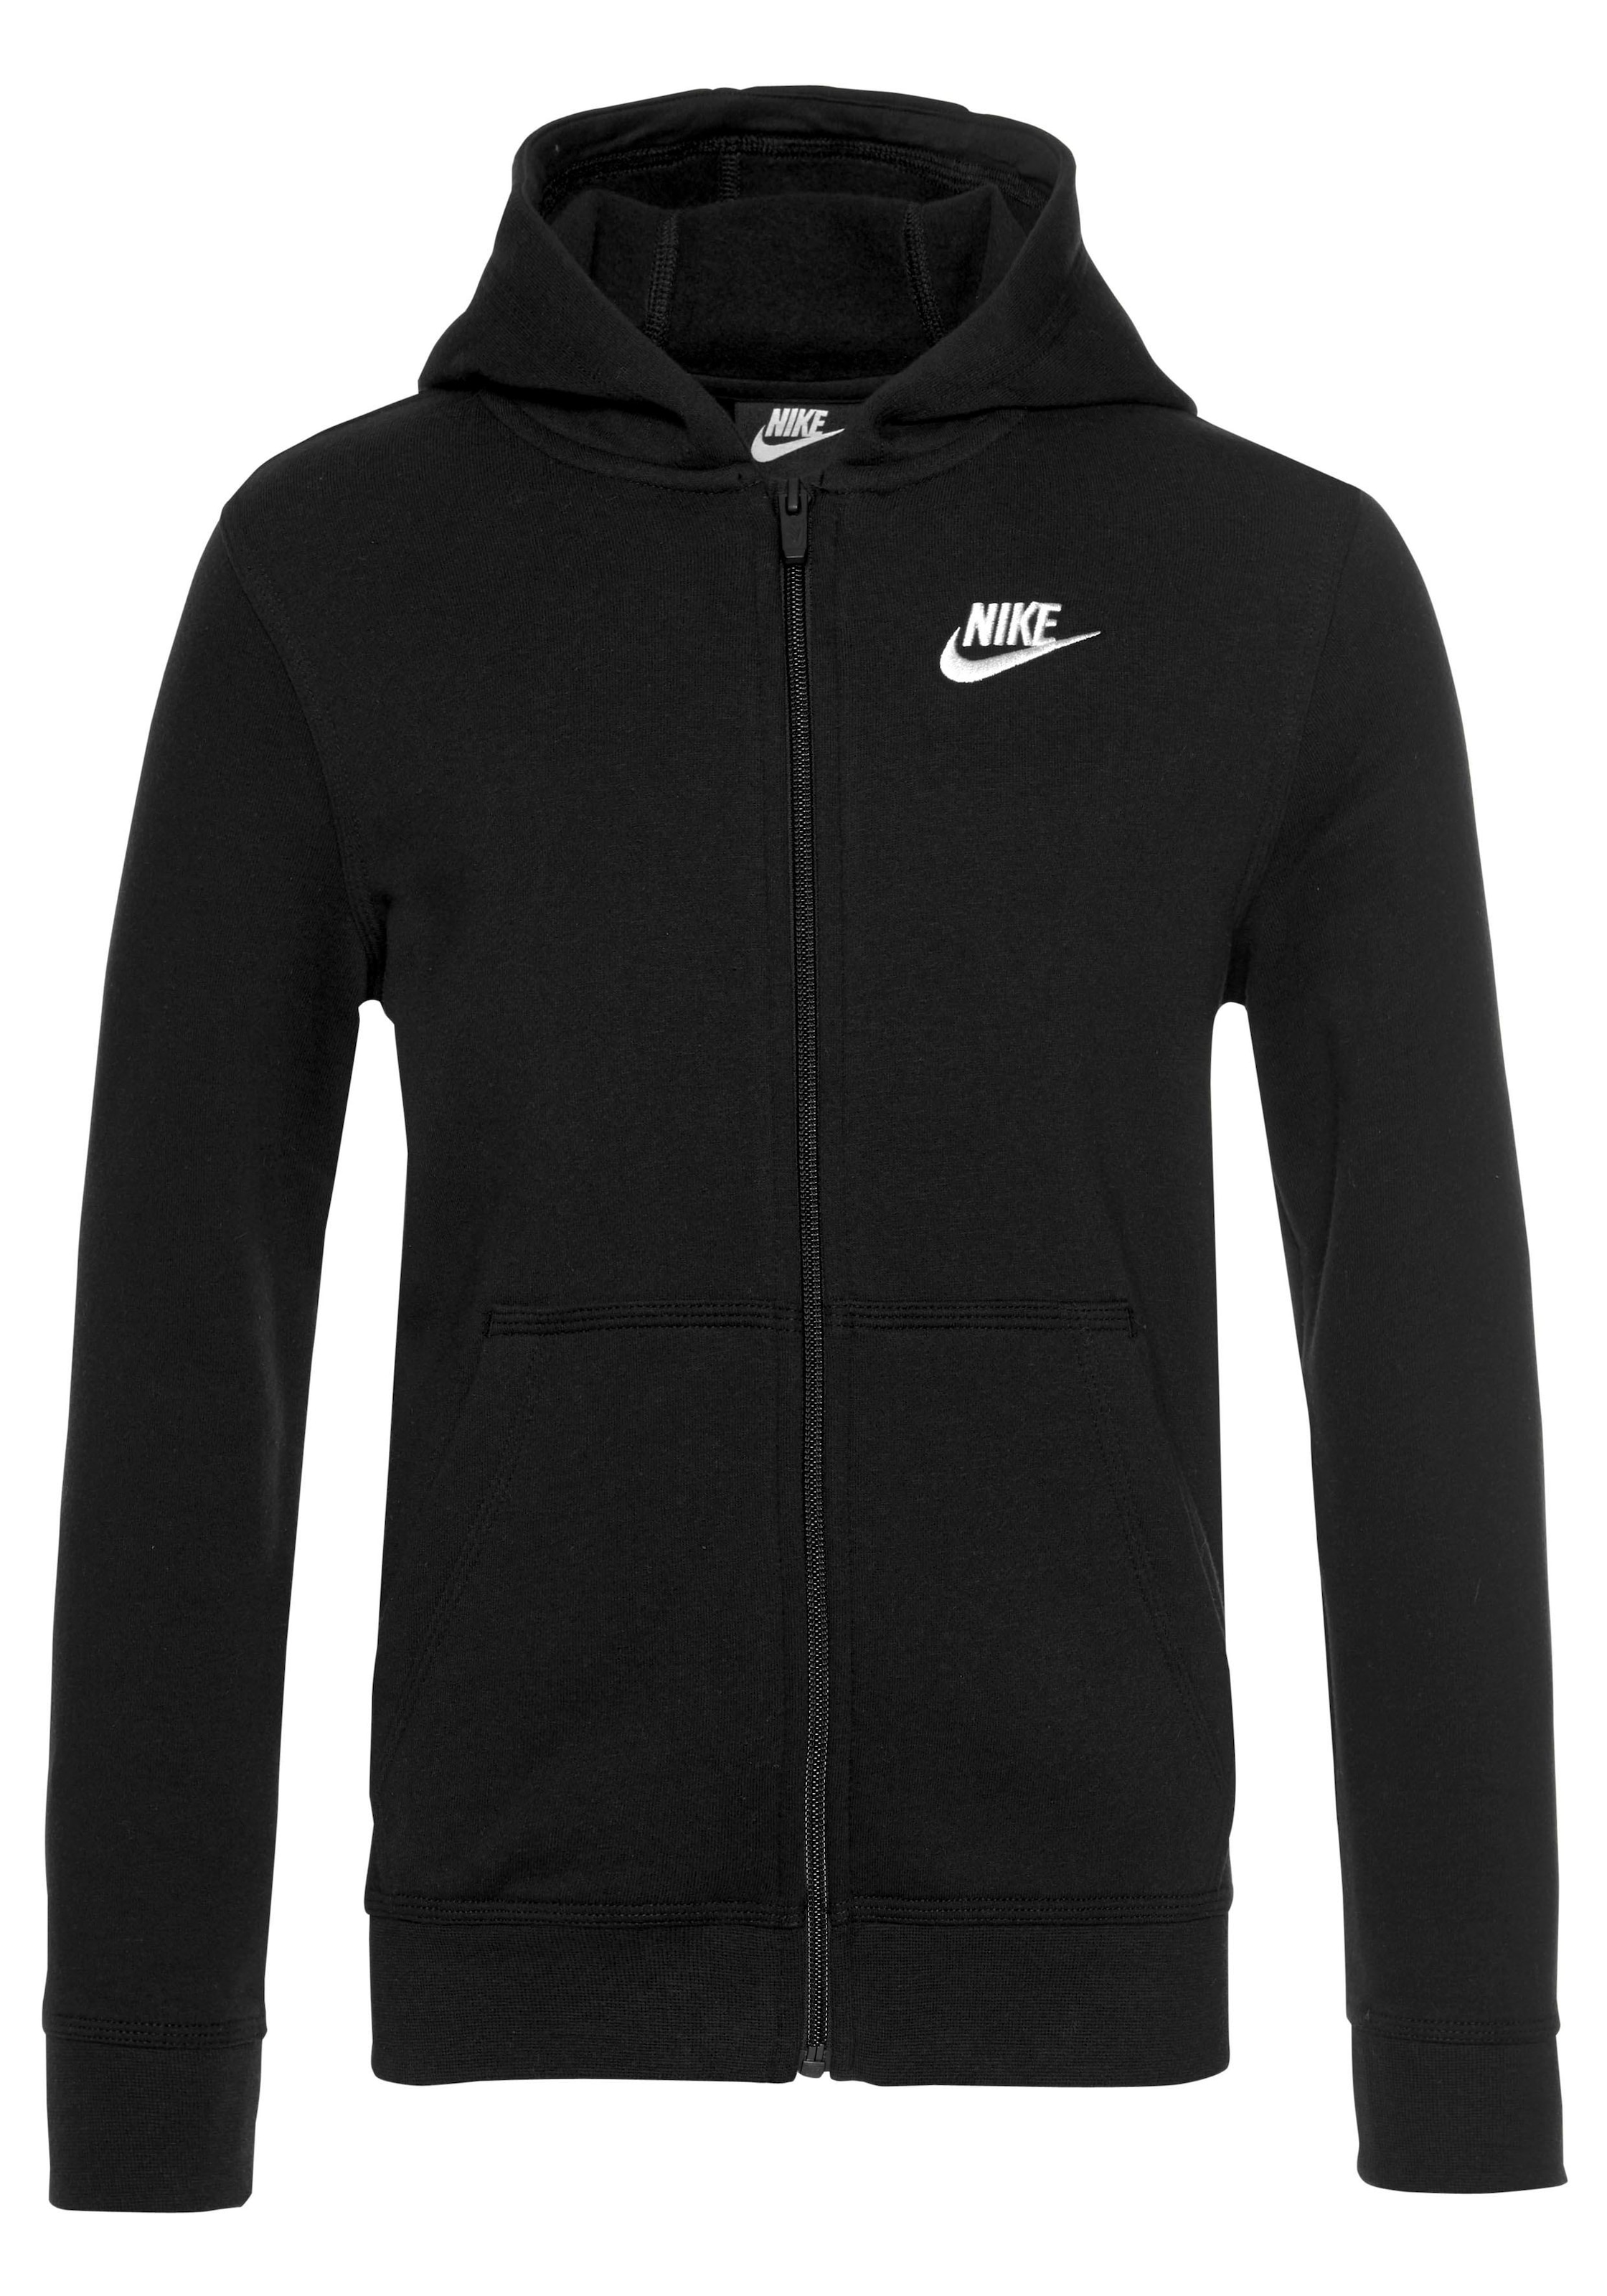 Kinder« CLUB Nike shoppen Kapuzensweatjacke FZ versandkostenfrei HOODIE - »NSW ohne Mindestbestellwert für Sportswear - Trendige